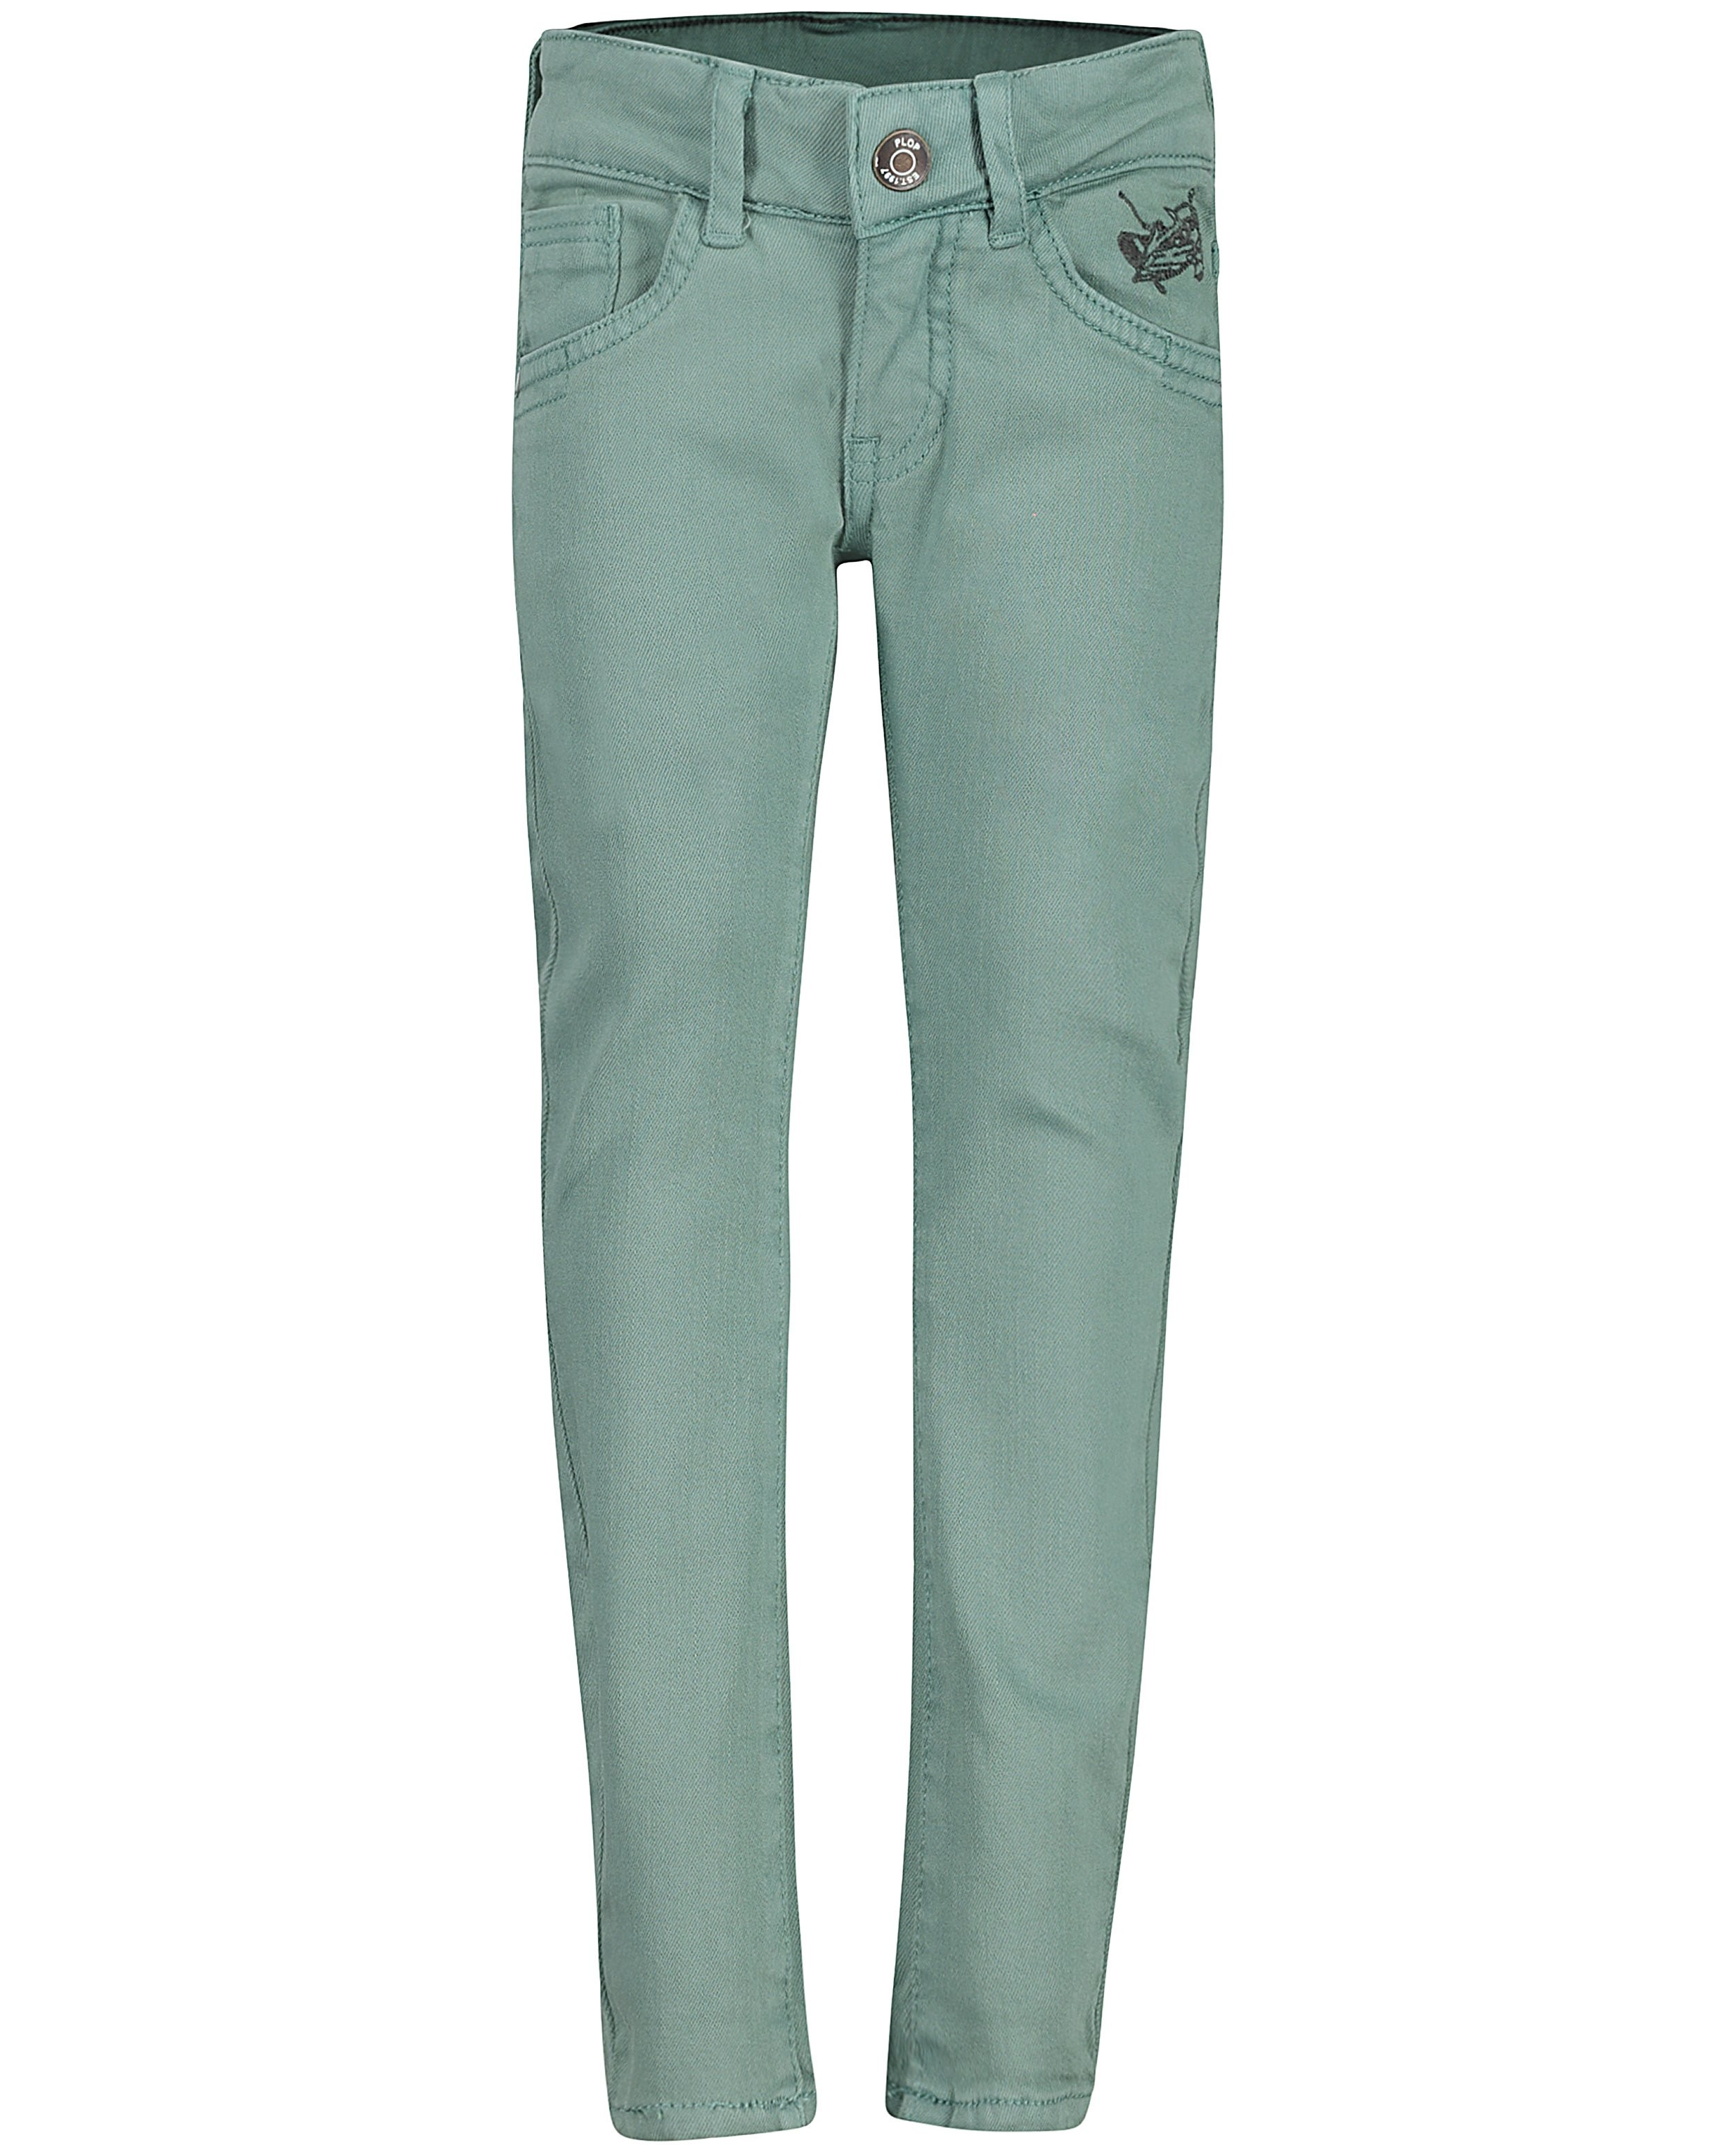 Broeken - Jadegroene jeans